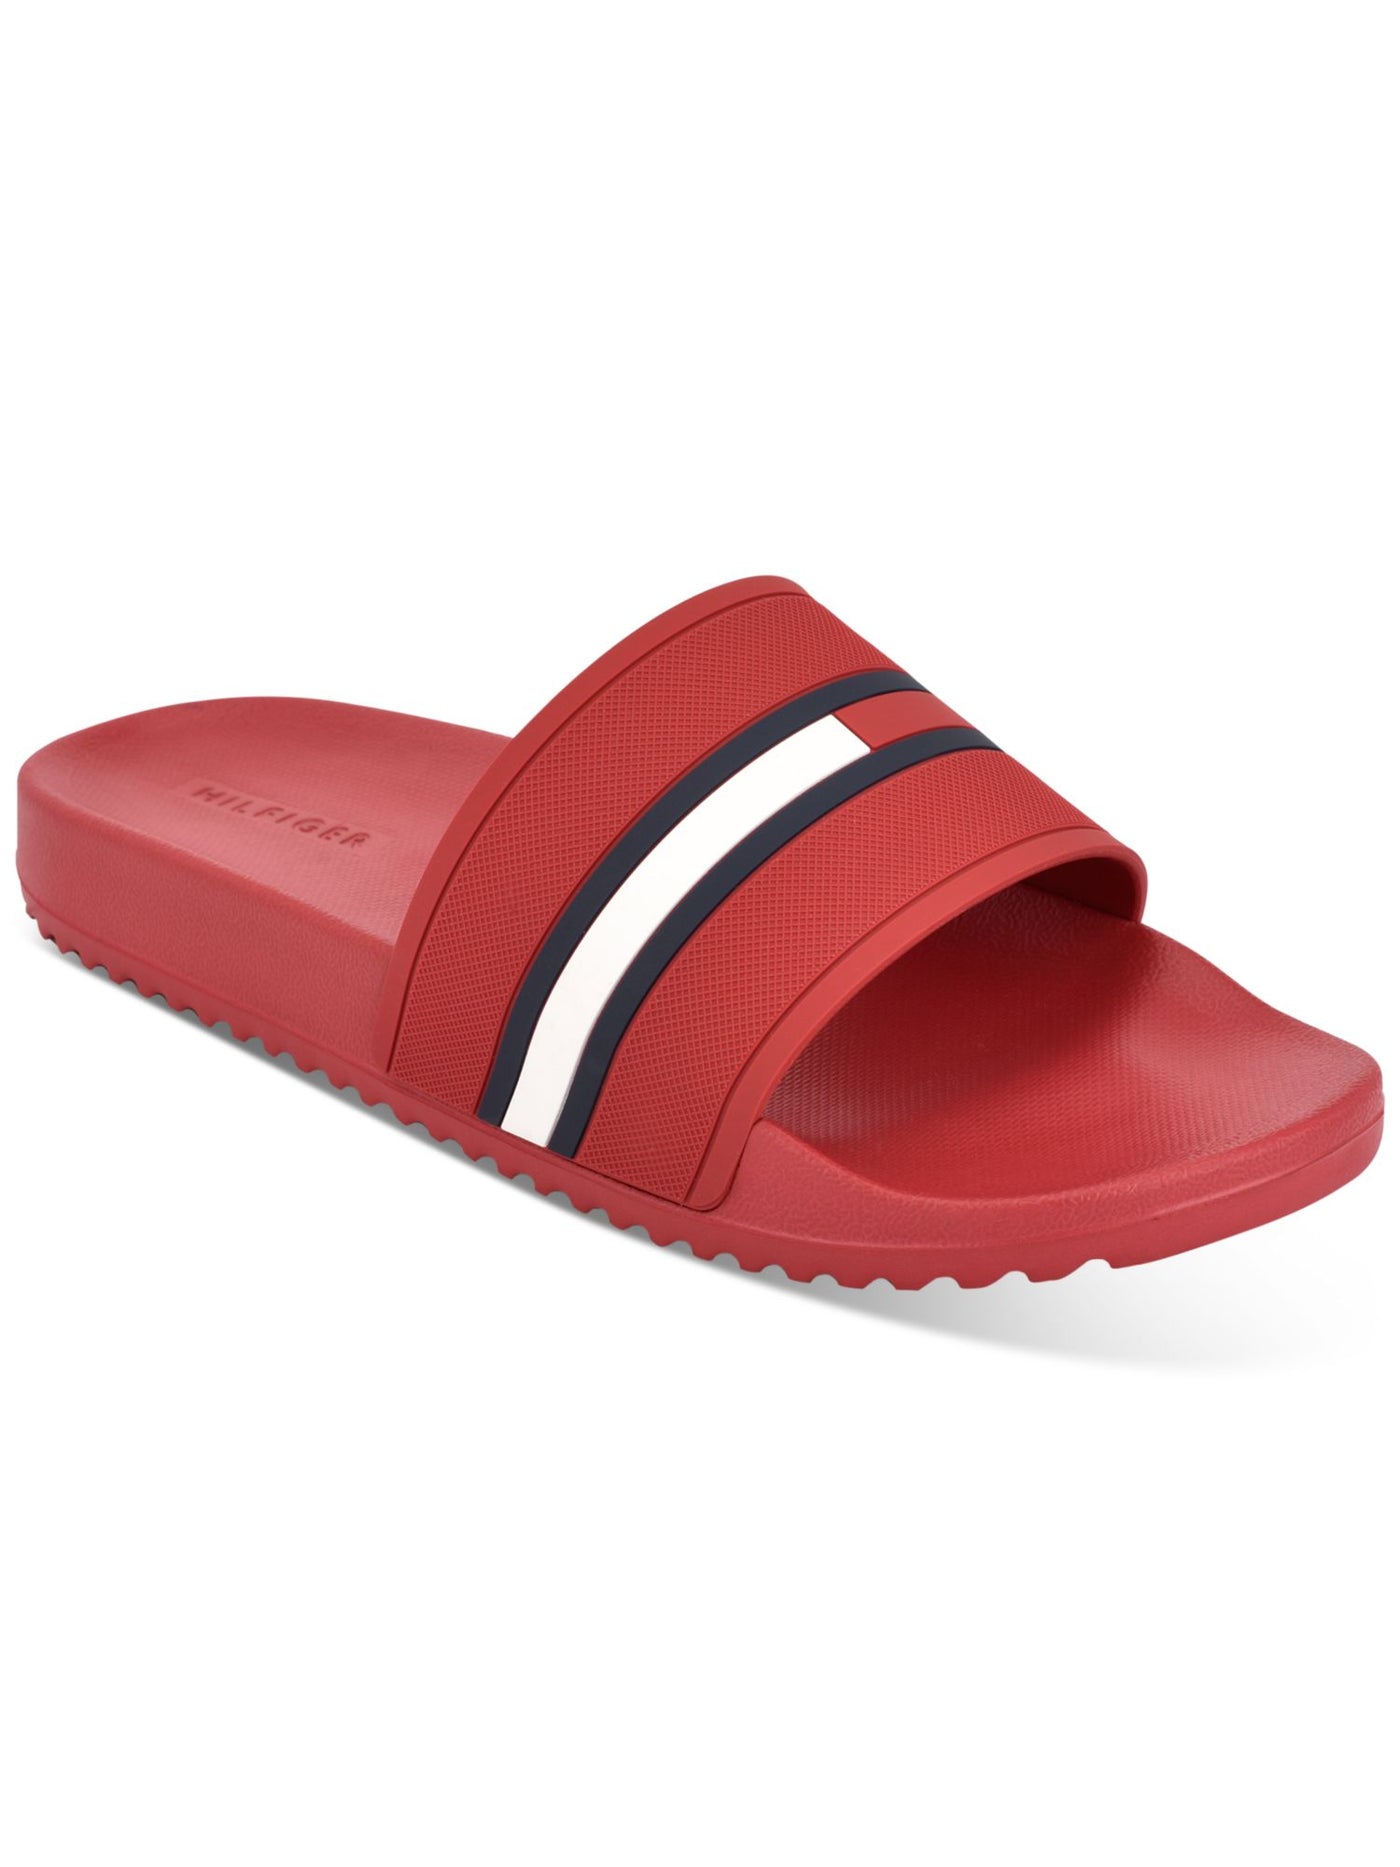 TOMMY HILFIGER Mens Red Comfort Redder Round Toe Slip On Slide Sandals Shoes 12 M